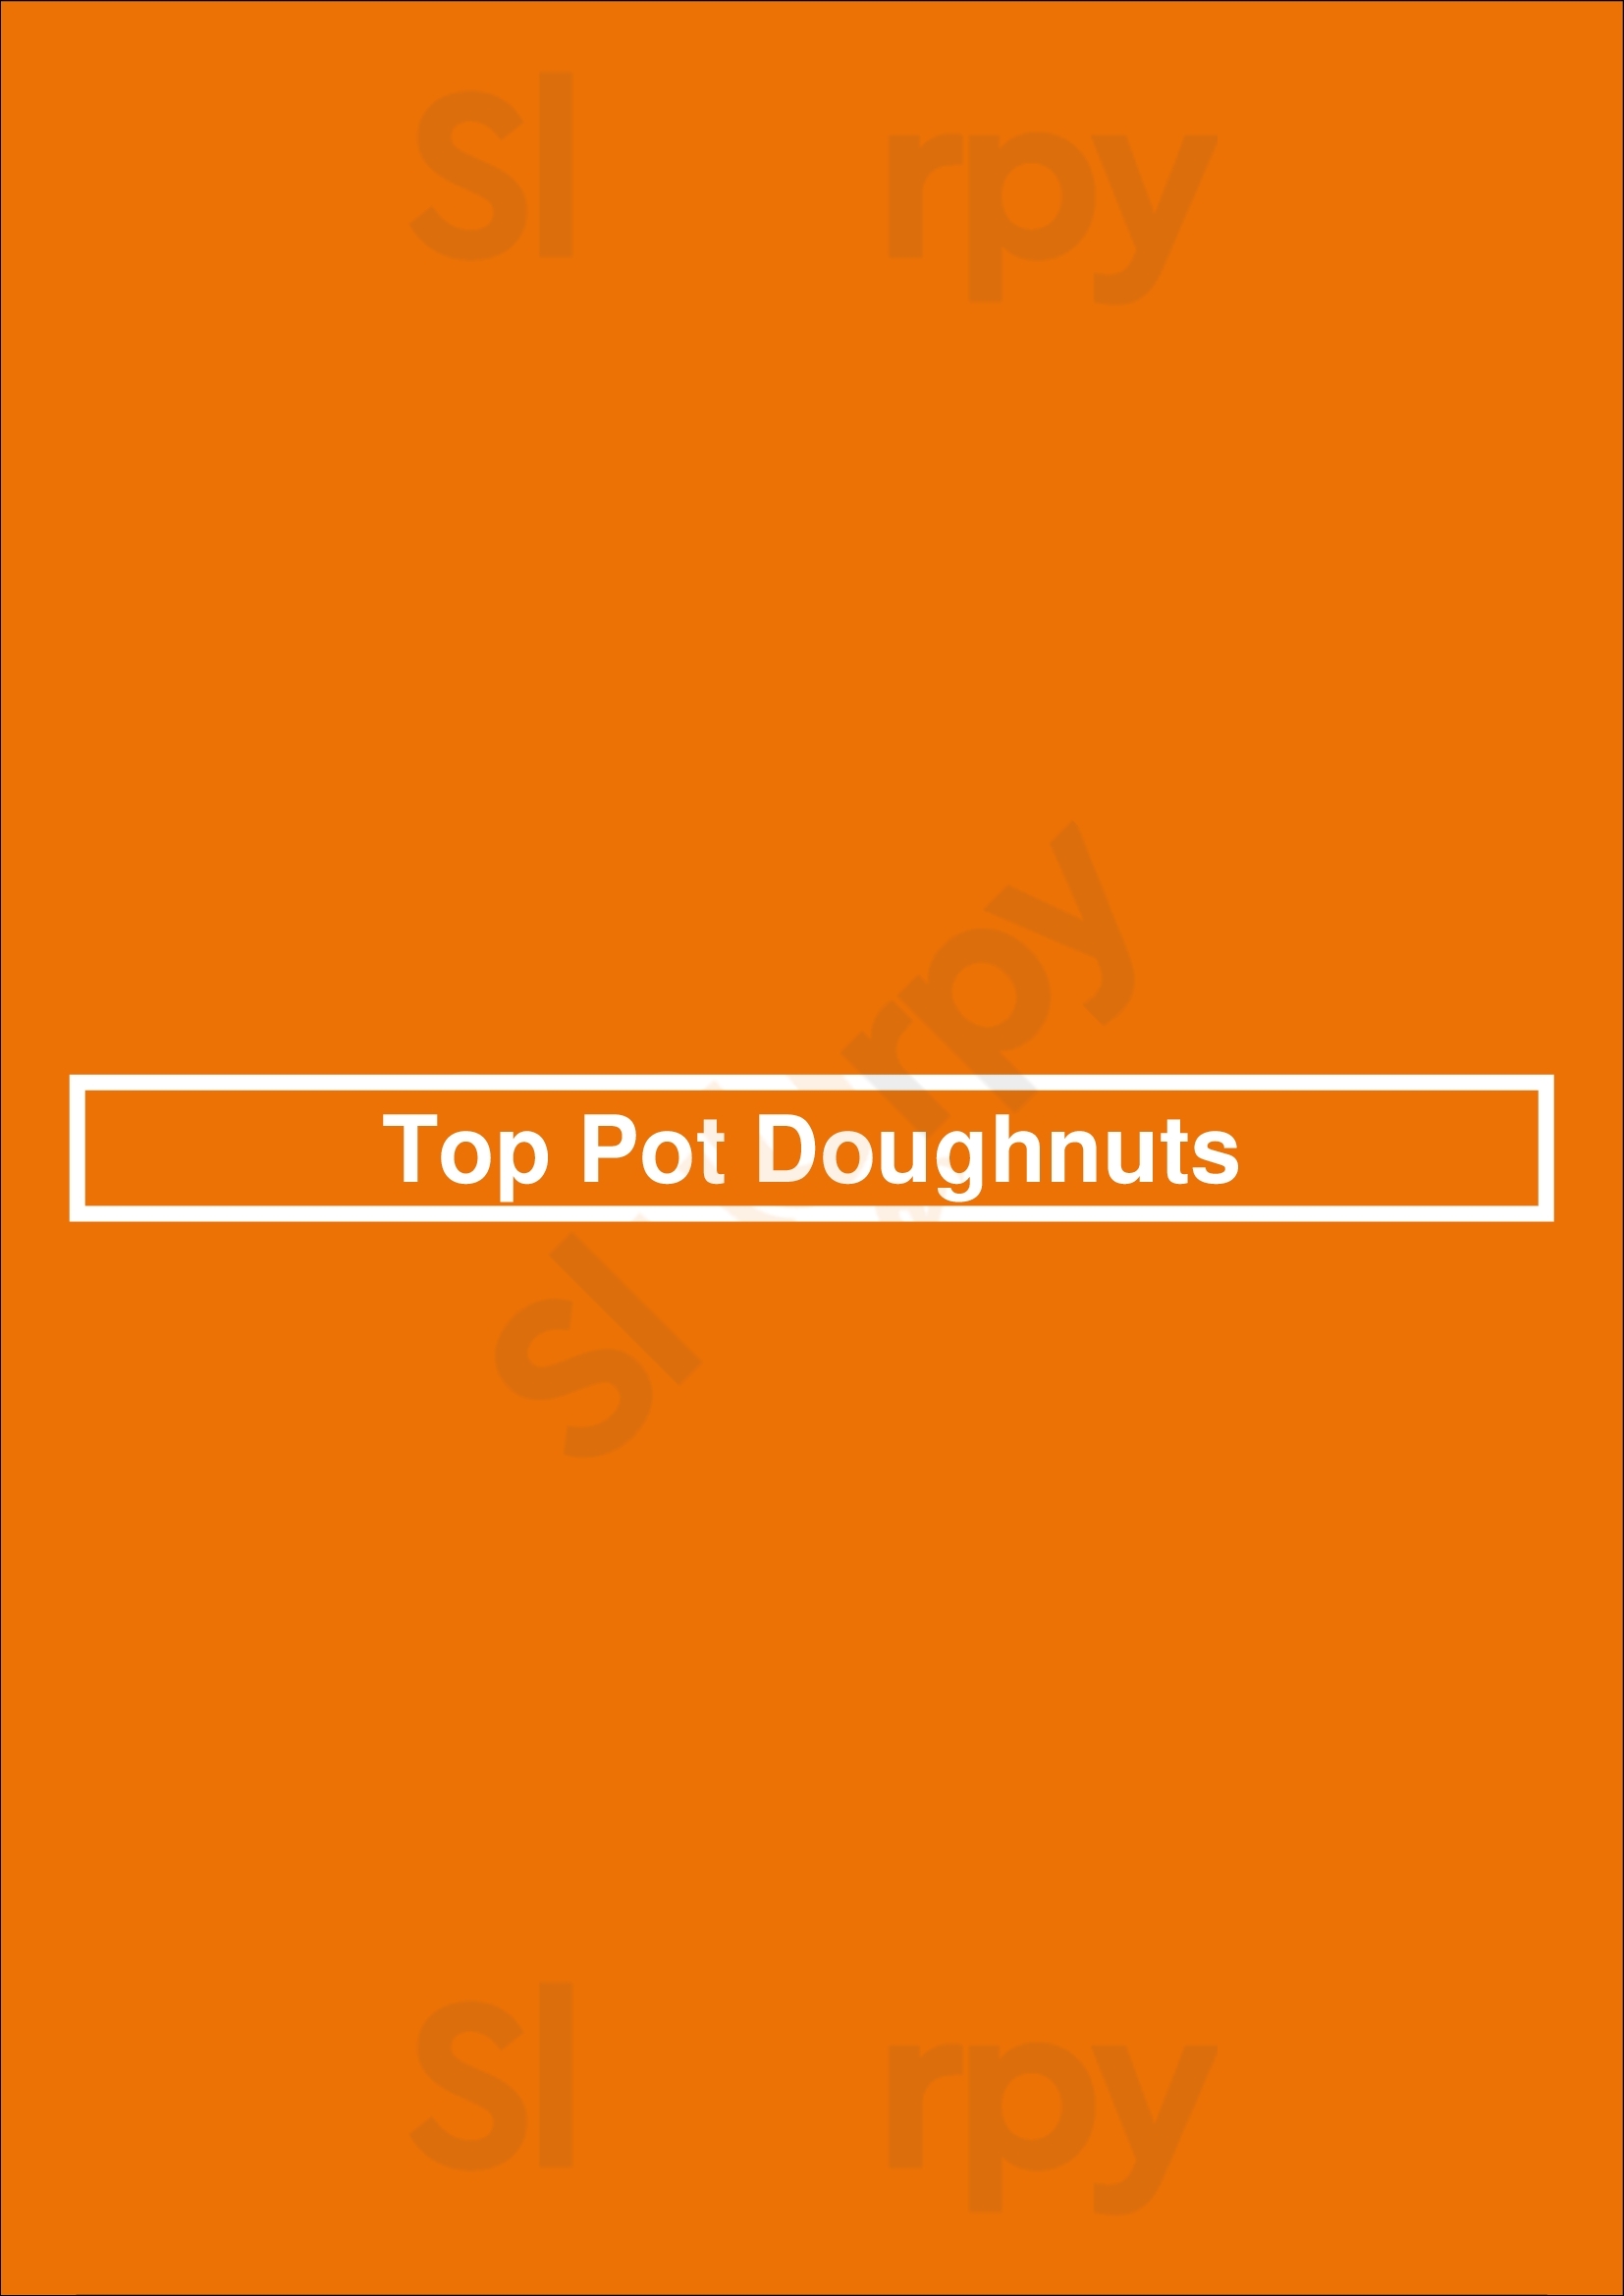 Top Pot Doughnuts Issaquah Menu - 1